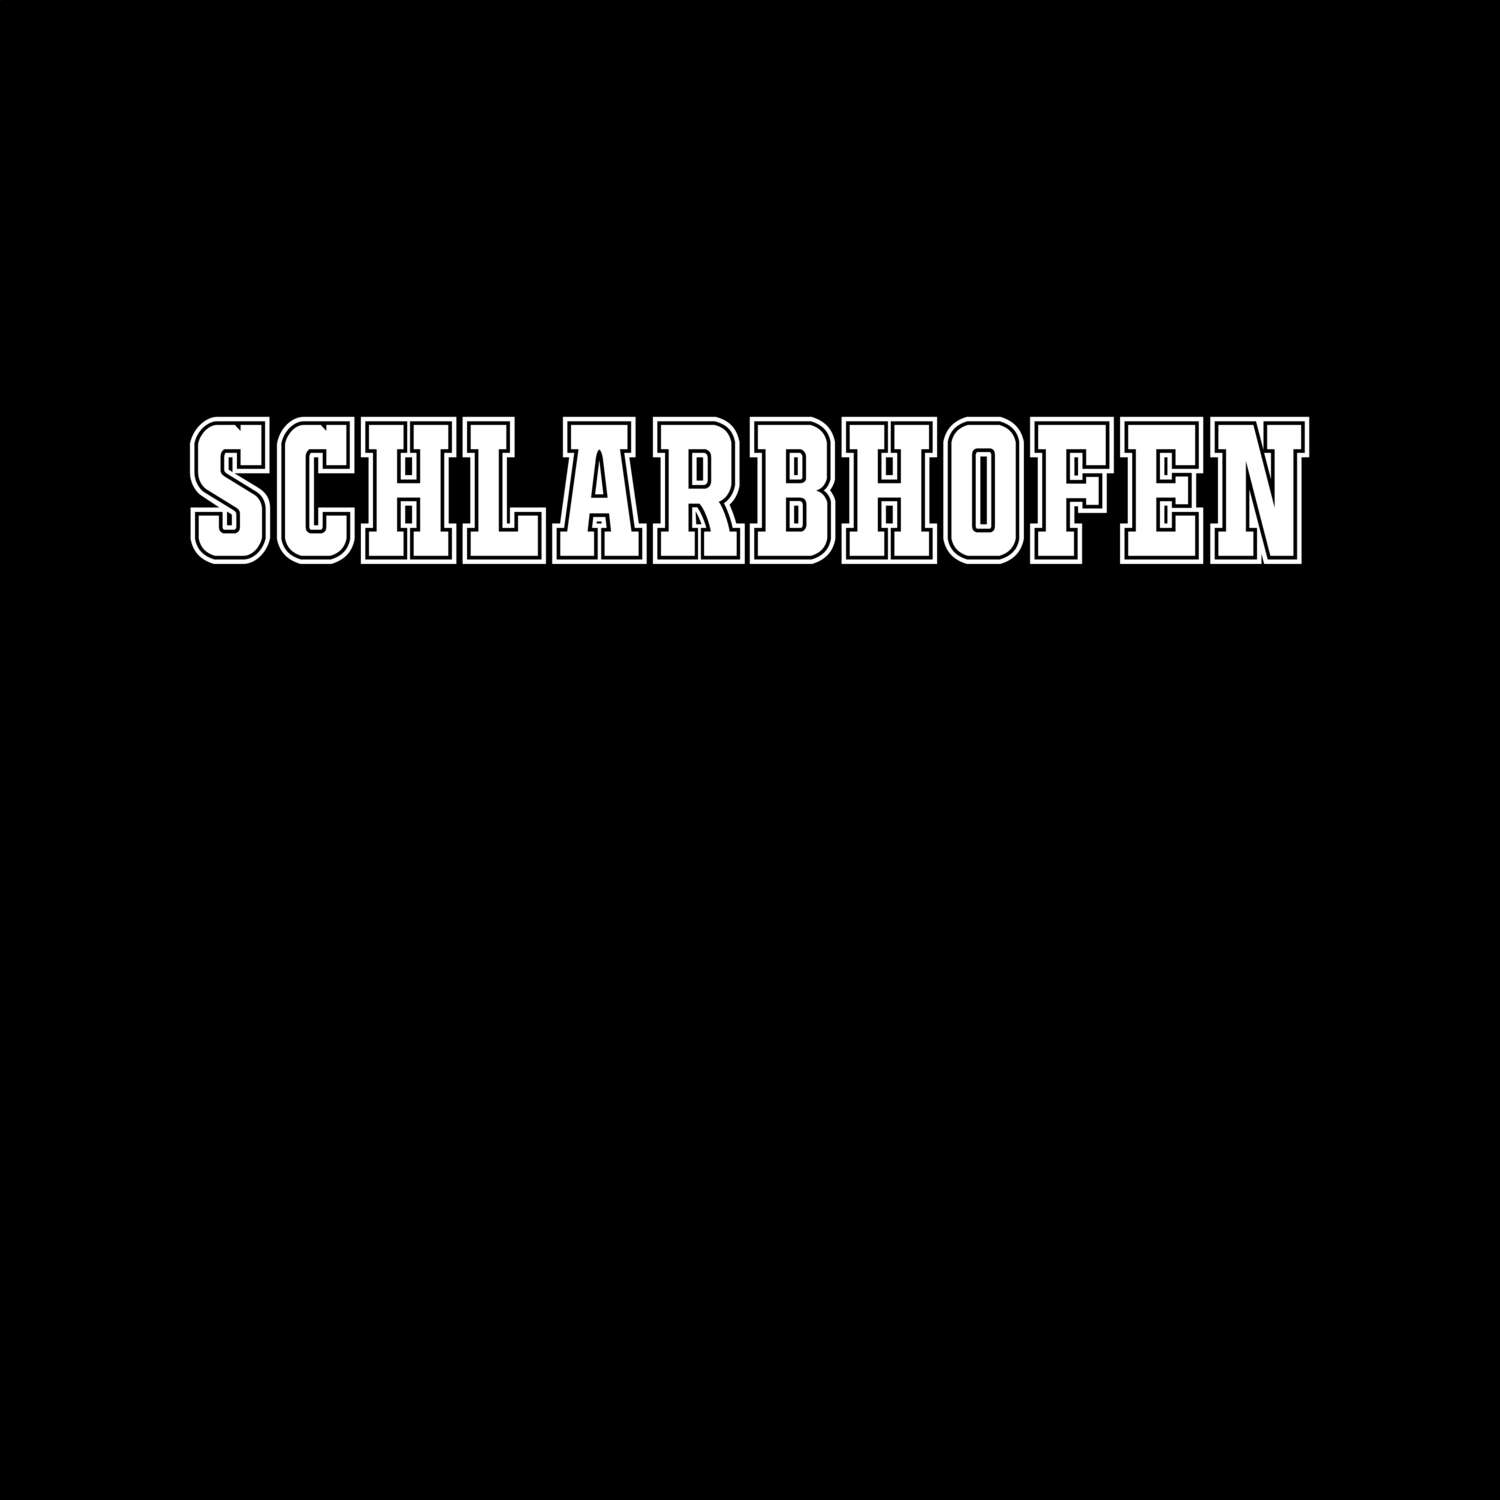 Schlarbhofen T-Shirt »Classic«